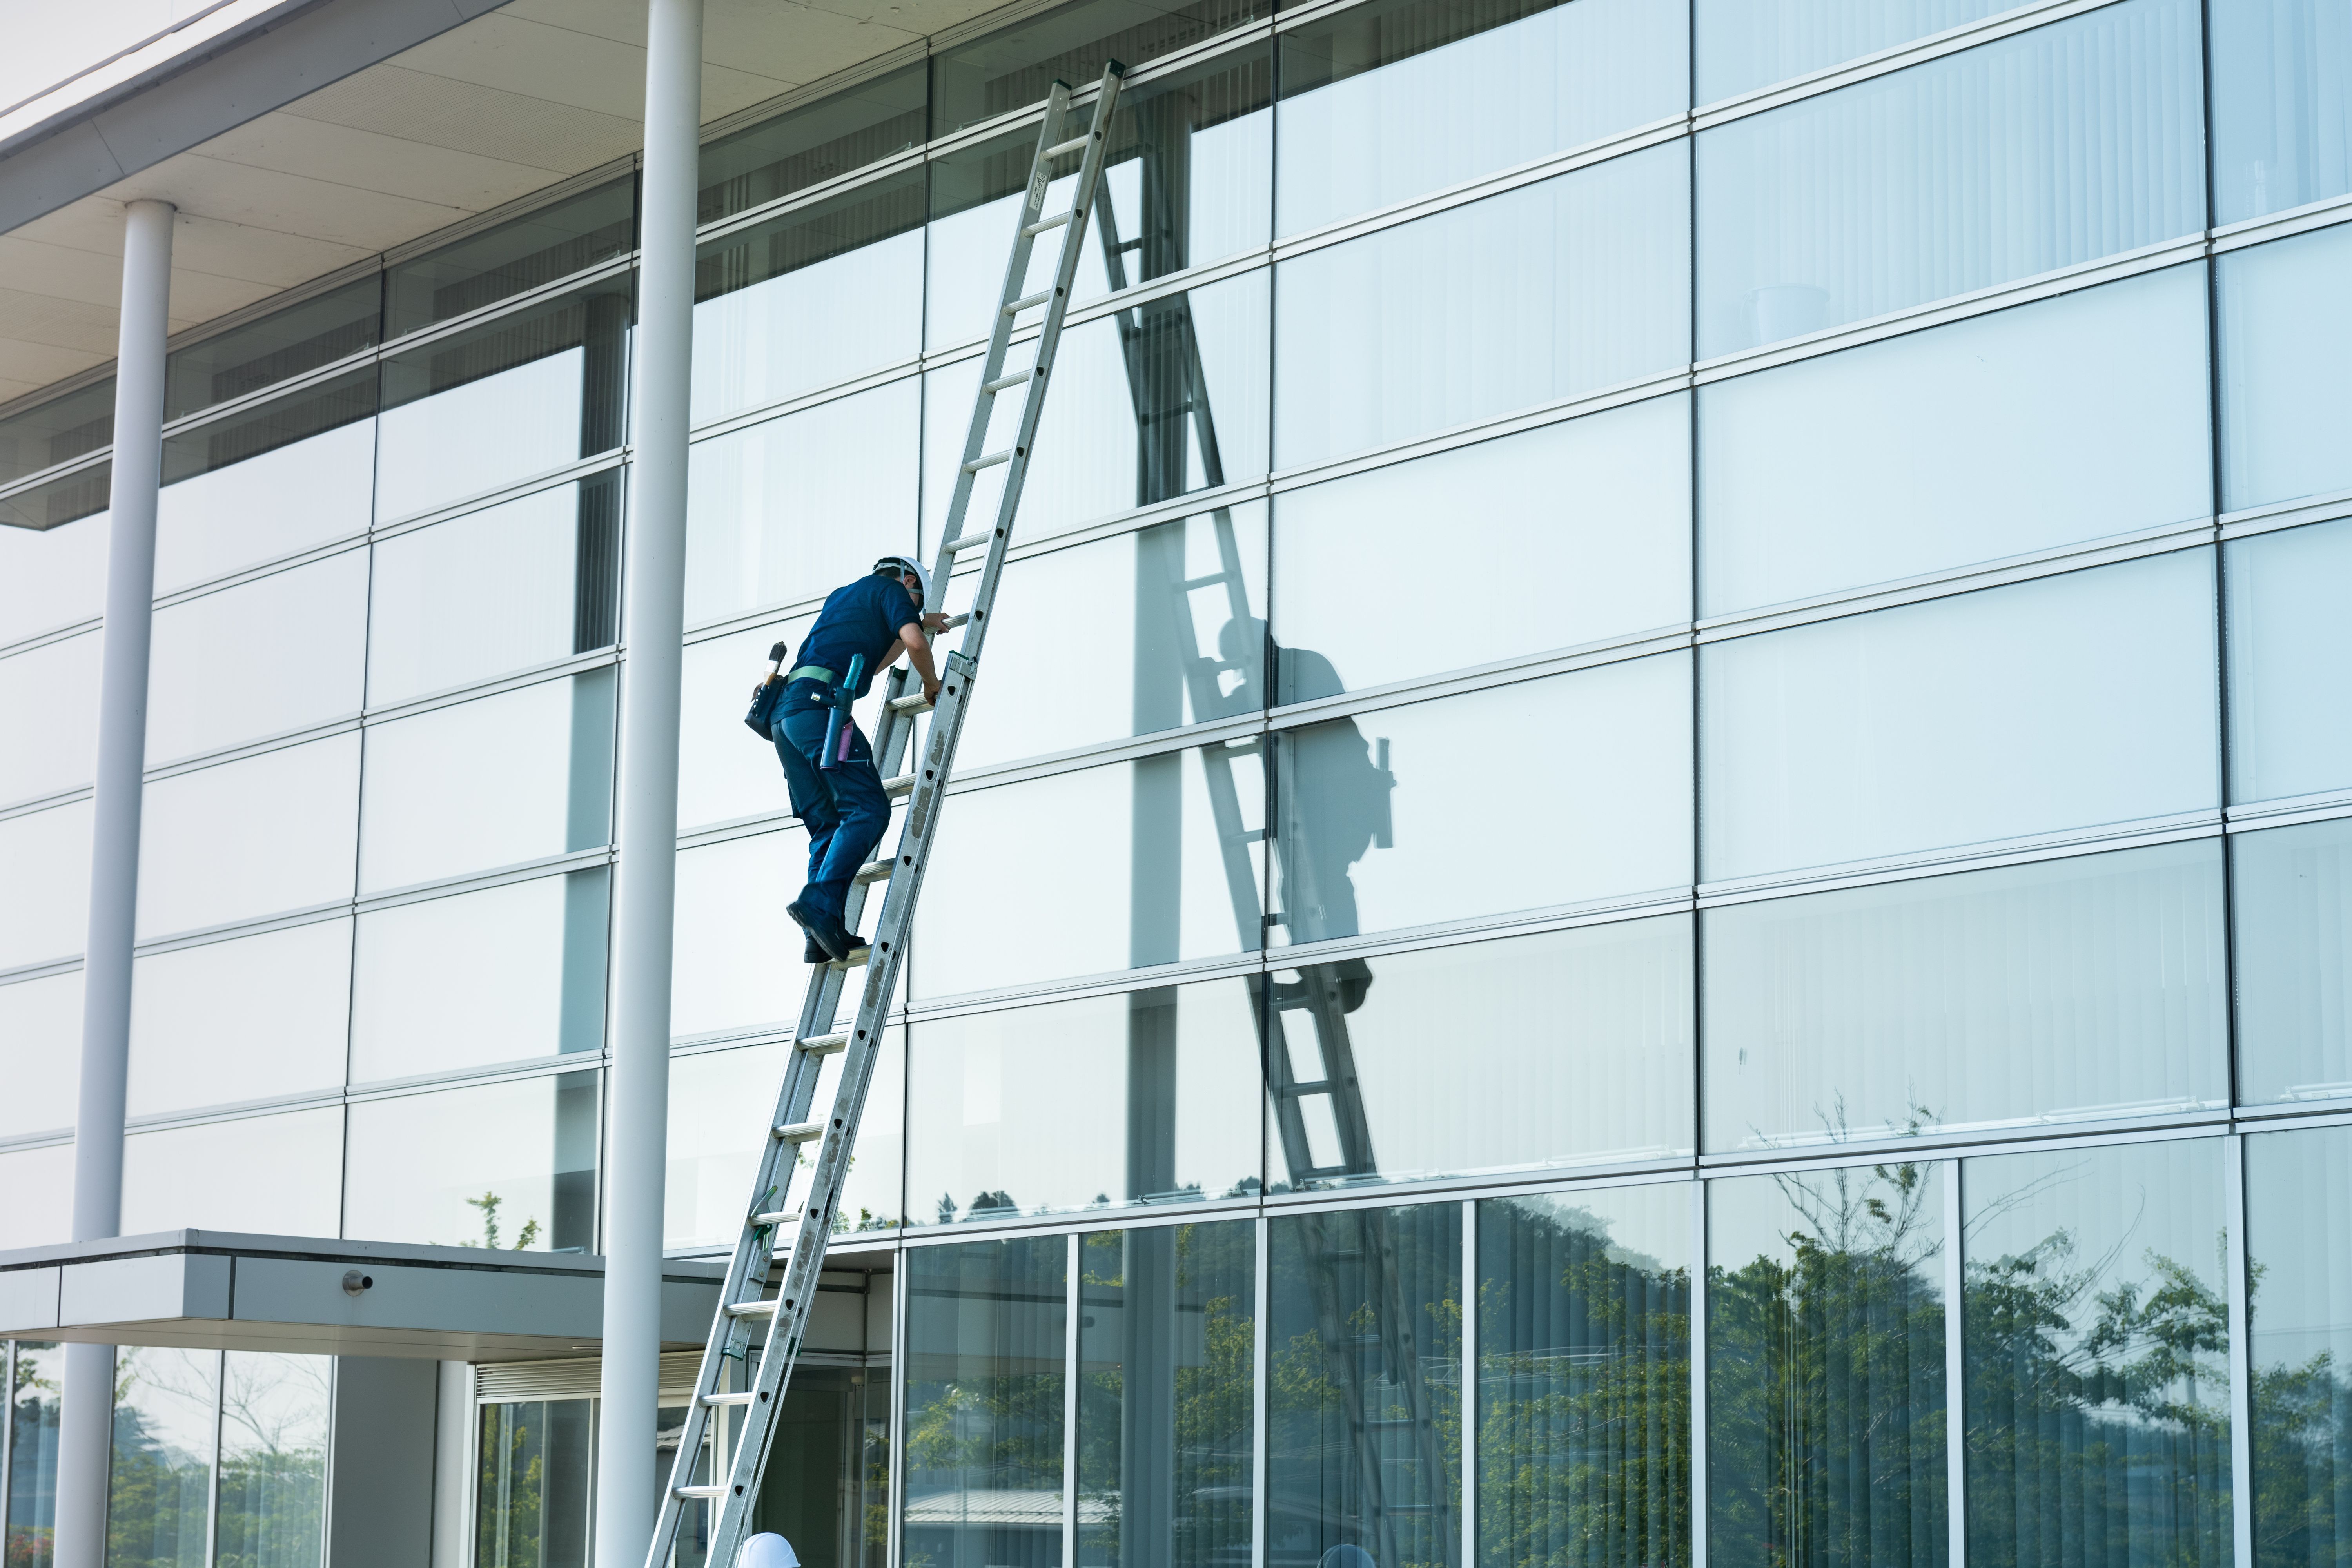 Diese Leiter ist nach oben hin ausziehbar, wodurch sie für Arbeiten in unterschiedlichen Höhen angelegt werden kann. Schiebeleitern verwenden Sie am besten für Arbeiten an hohen Decken, Wänden, Dachrinnen oder für das Reinigen von Dachfenstern.